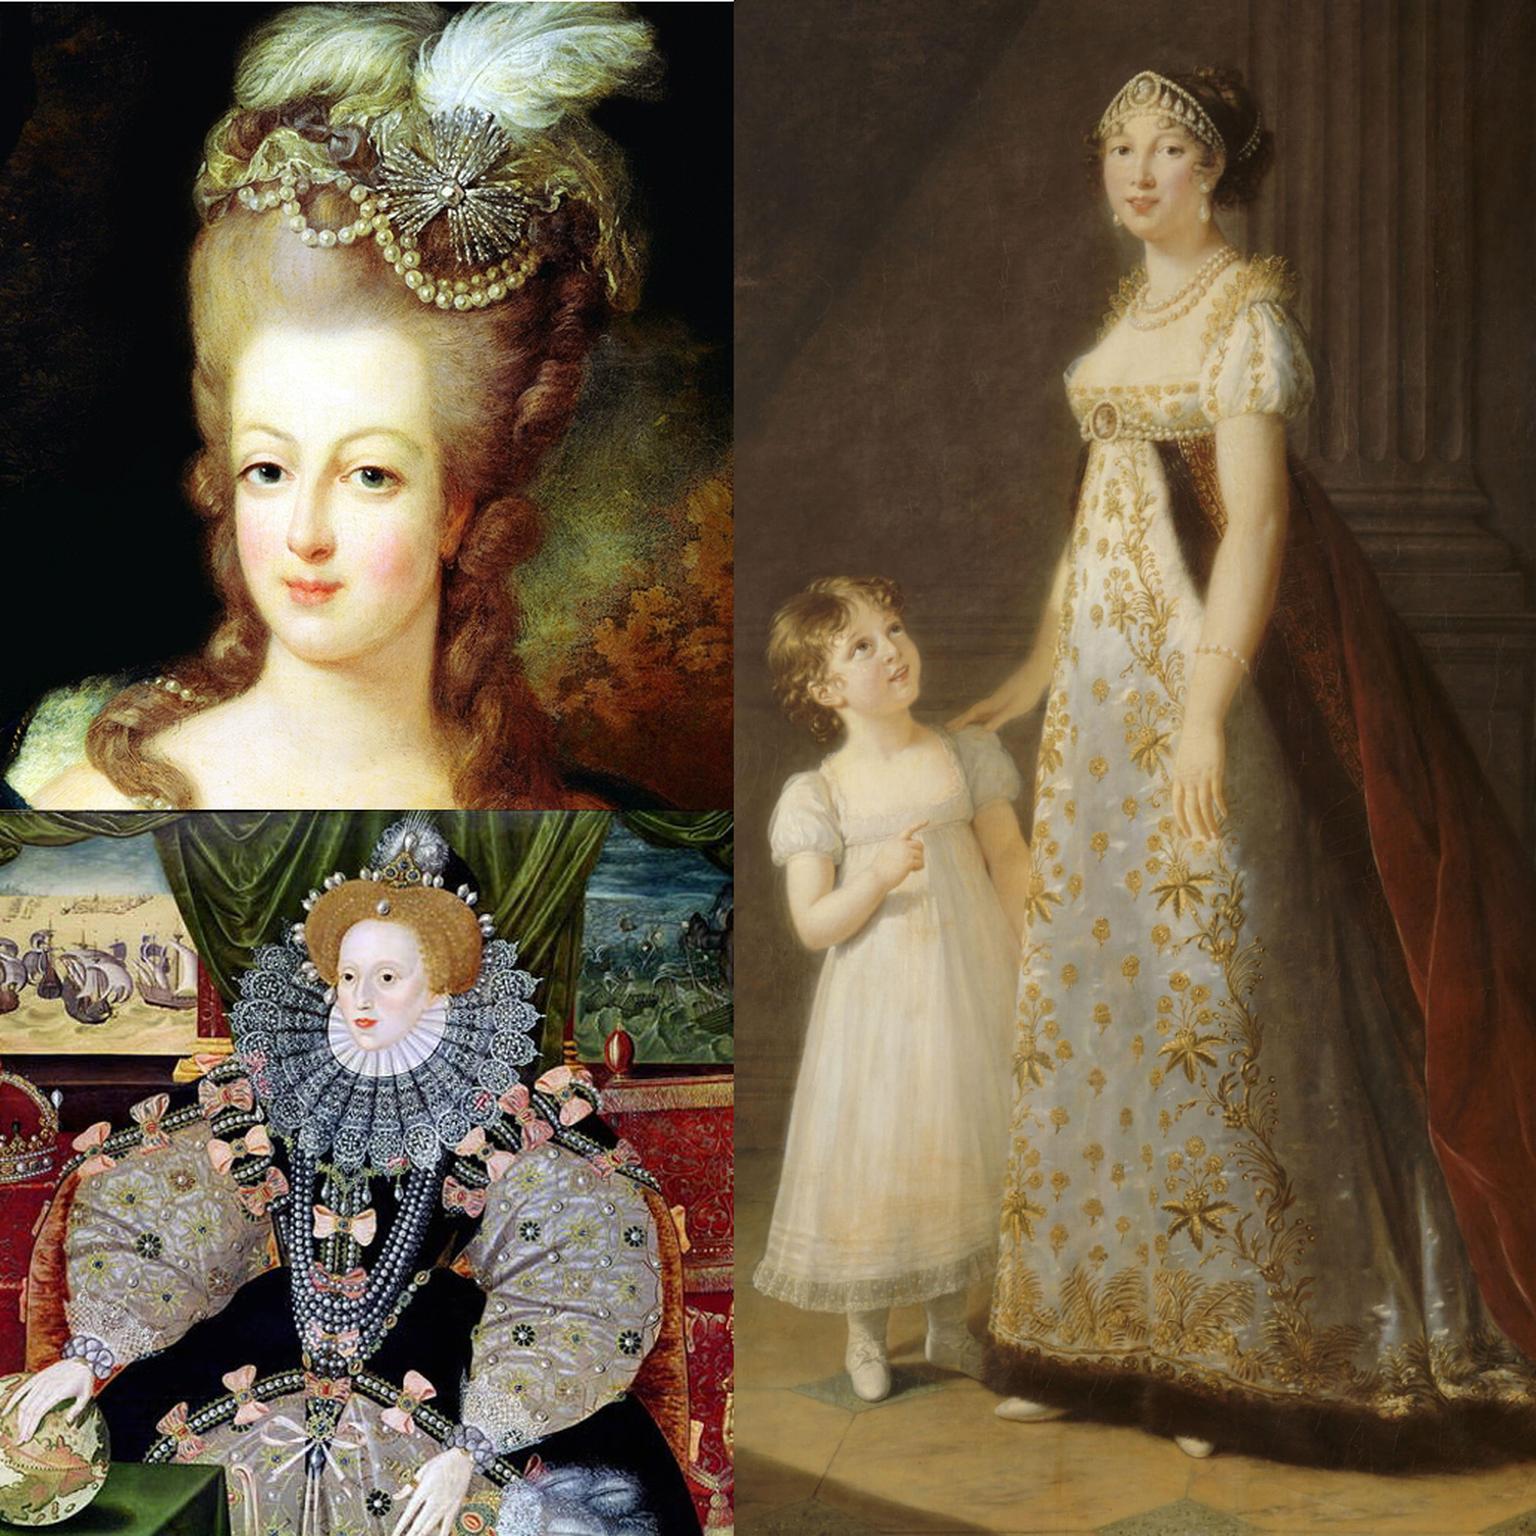 Queen Elizabeth Queen Marie Antoinette Caroline Bonaparte Queen of Naples